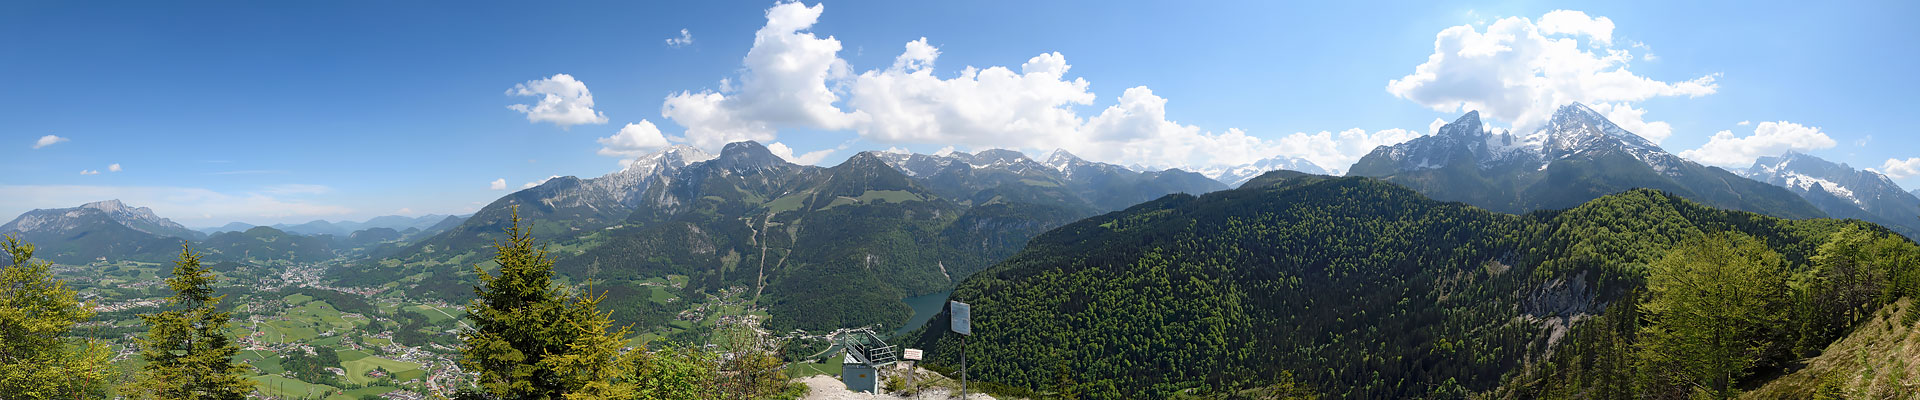 Grünstein-Klettersteig